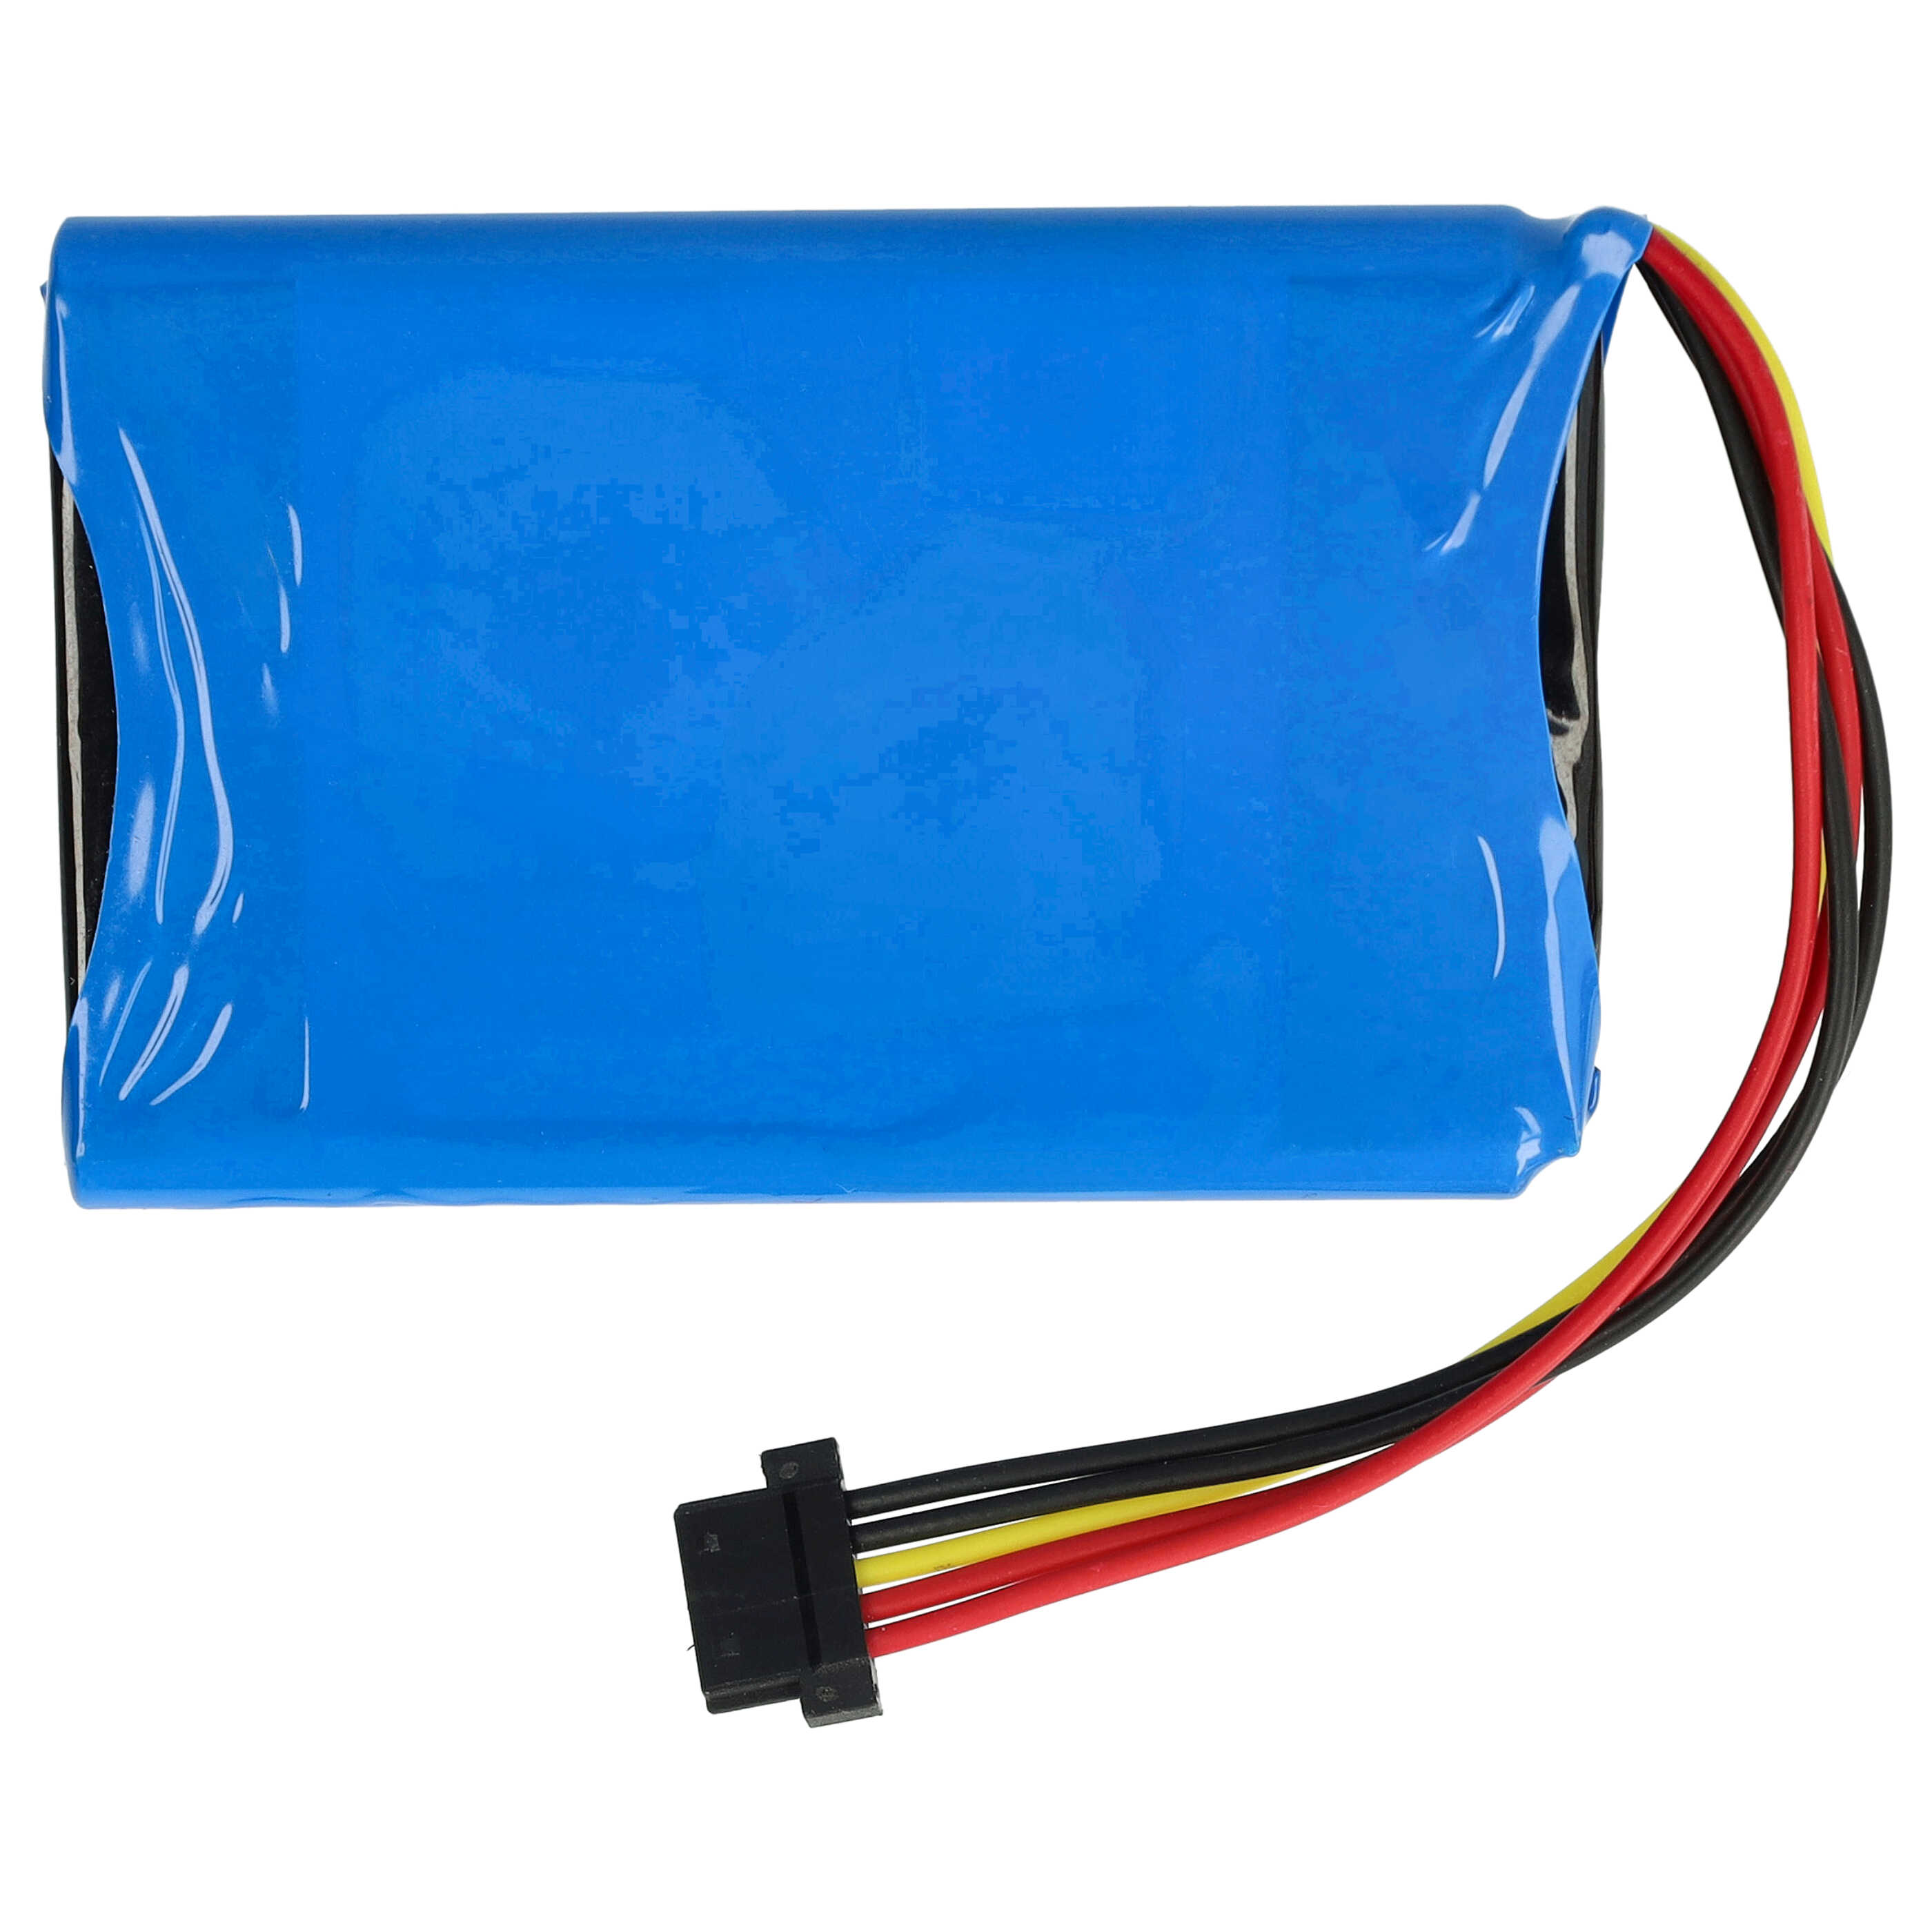 GPS Battery Replacement for TomTom 4EG0.001.08, 6027A0090721, 4EG0.001.17, 4EM0.001.01 - 1100mAh, 3.7V